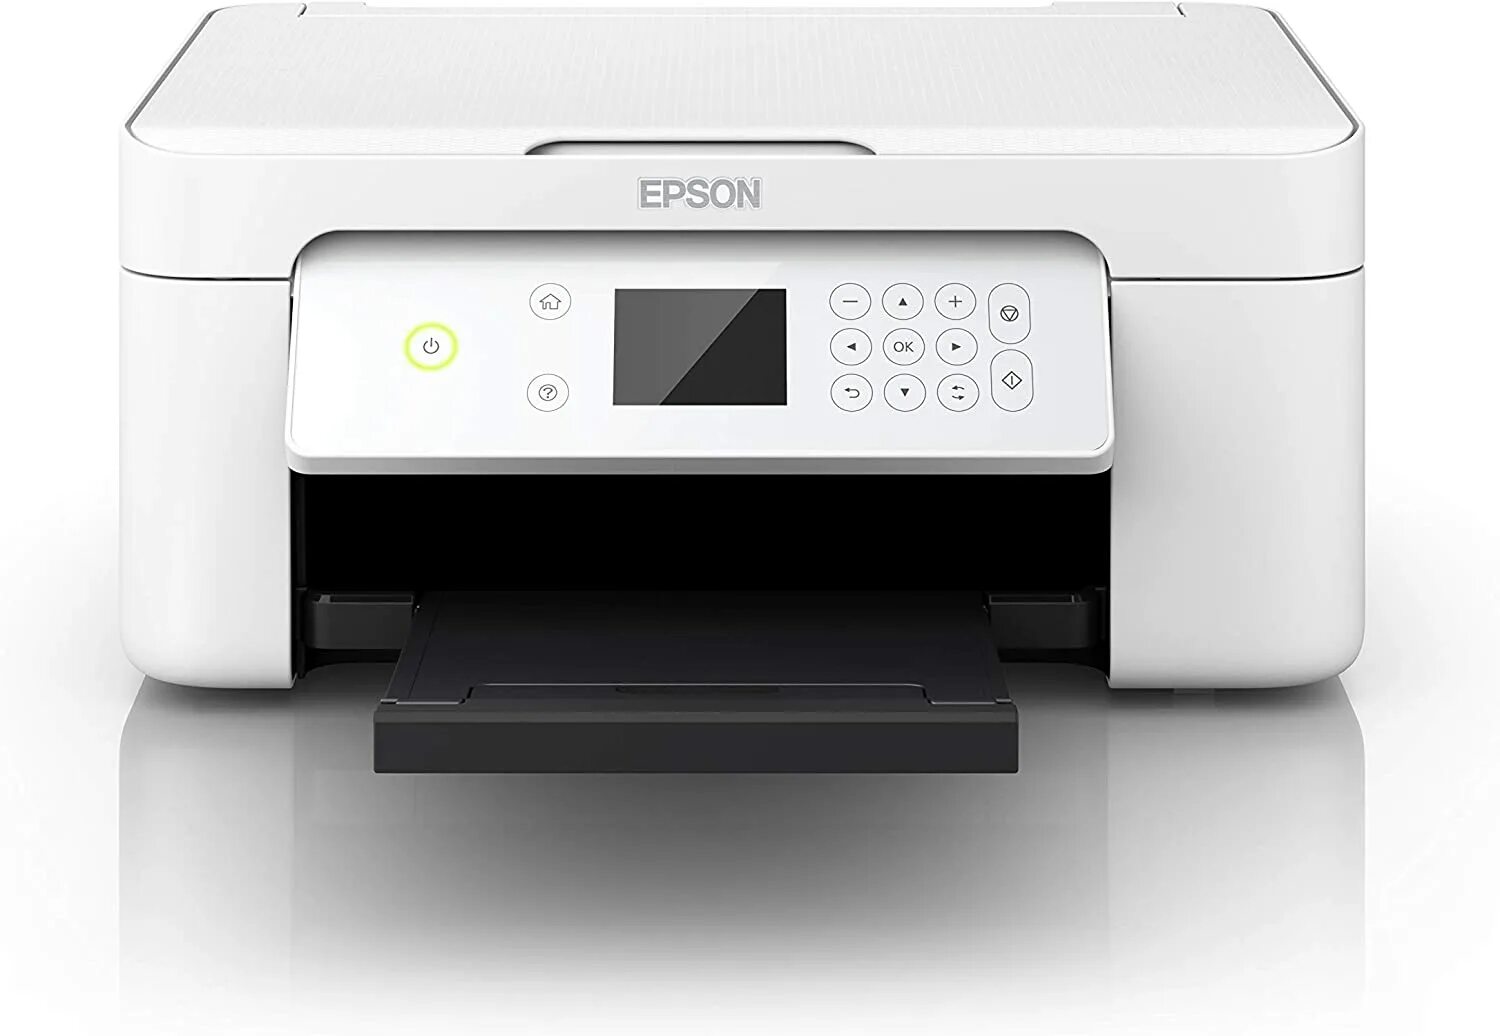 Купить принтер xp. Эпсон а1 принтер. Epson Printer 3 in 1. XP-4105 принтер струйный. Принтер Эпсон белый.